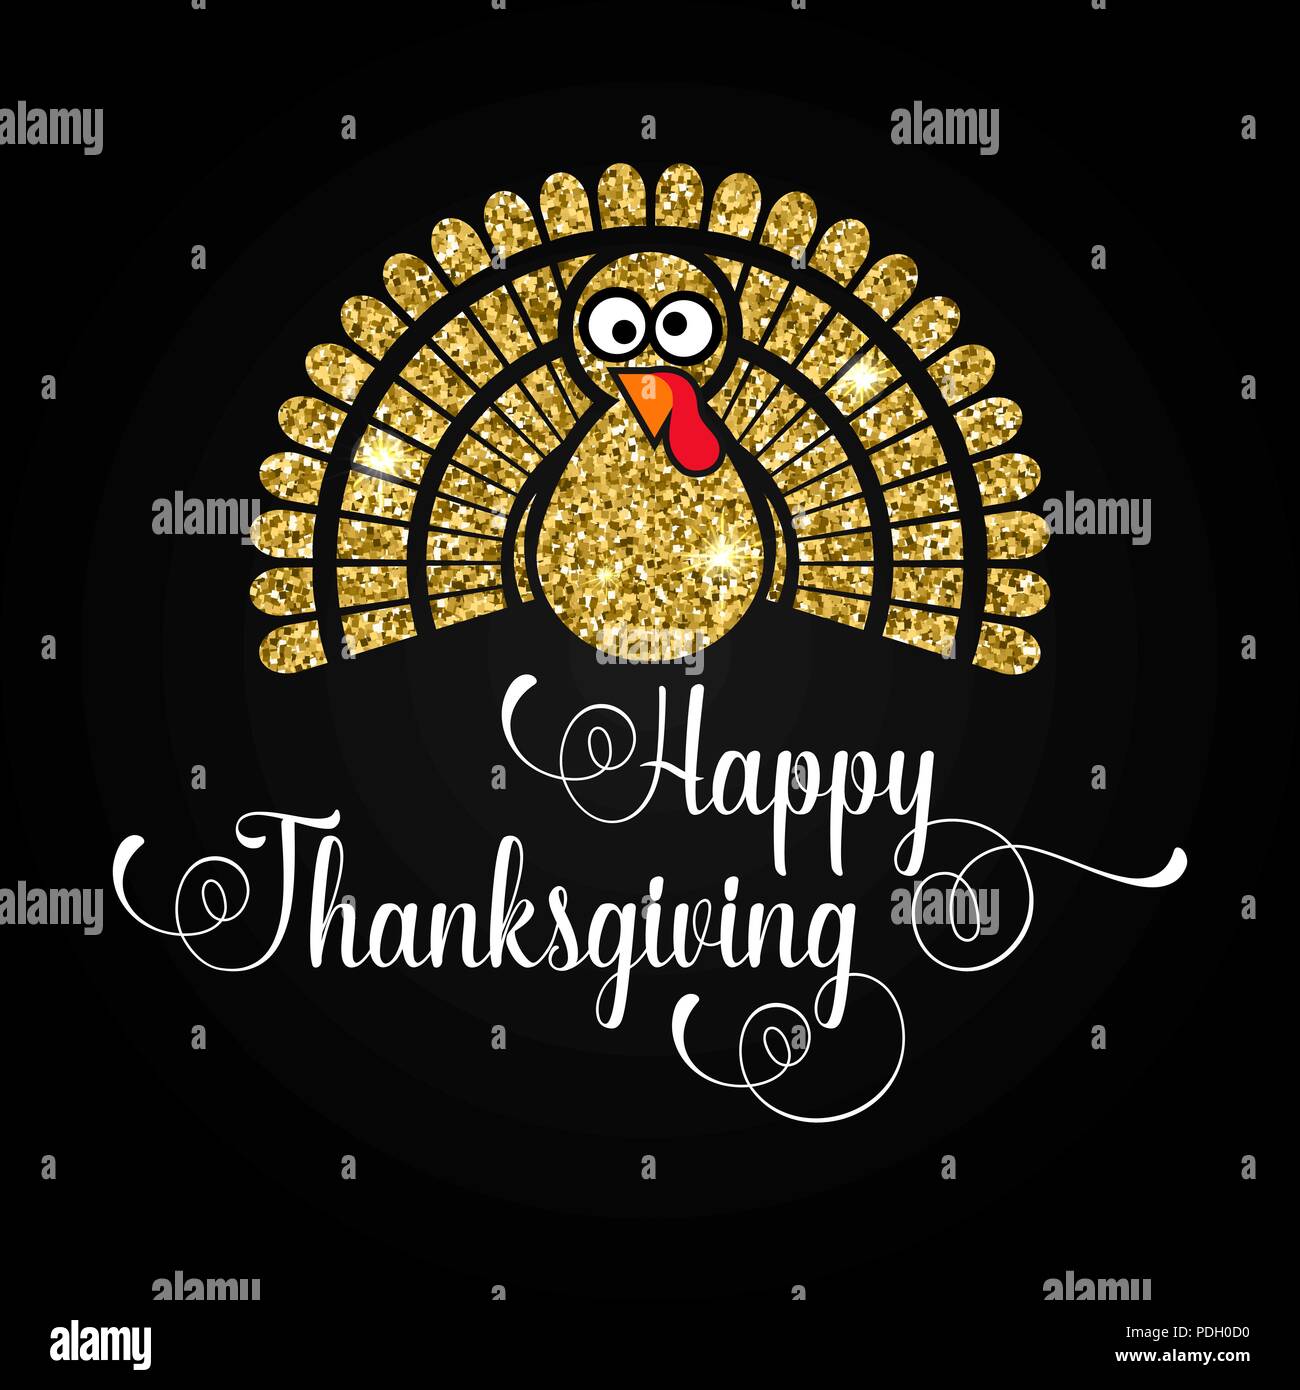 Happy Thanksgiving Day Grußkarte. Typografie Poster mit goldenen Türkei Silhouette und Text. Vector Illustration. Stock Vektor